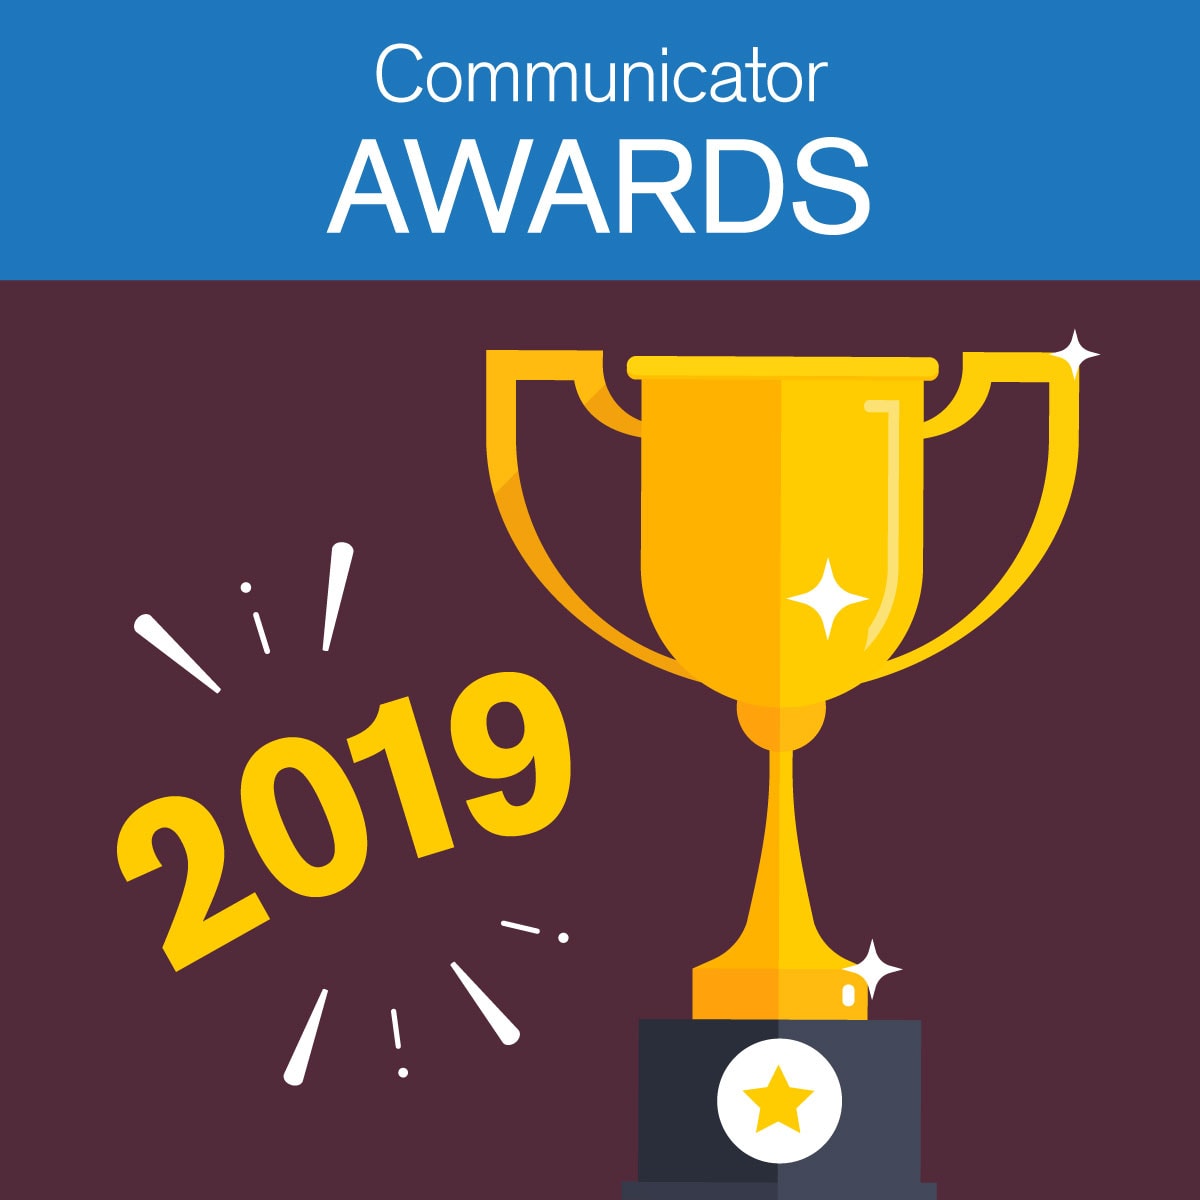 2019 Communicator Awards